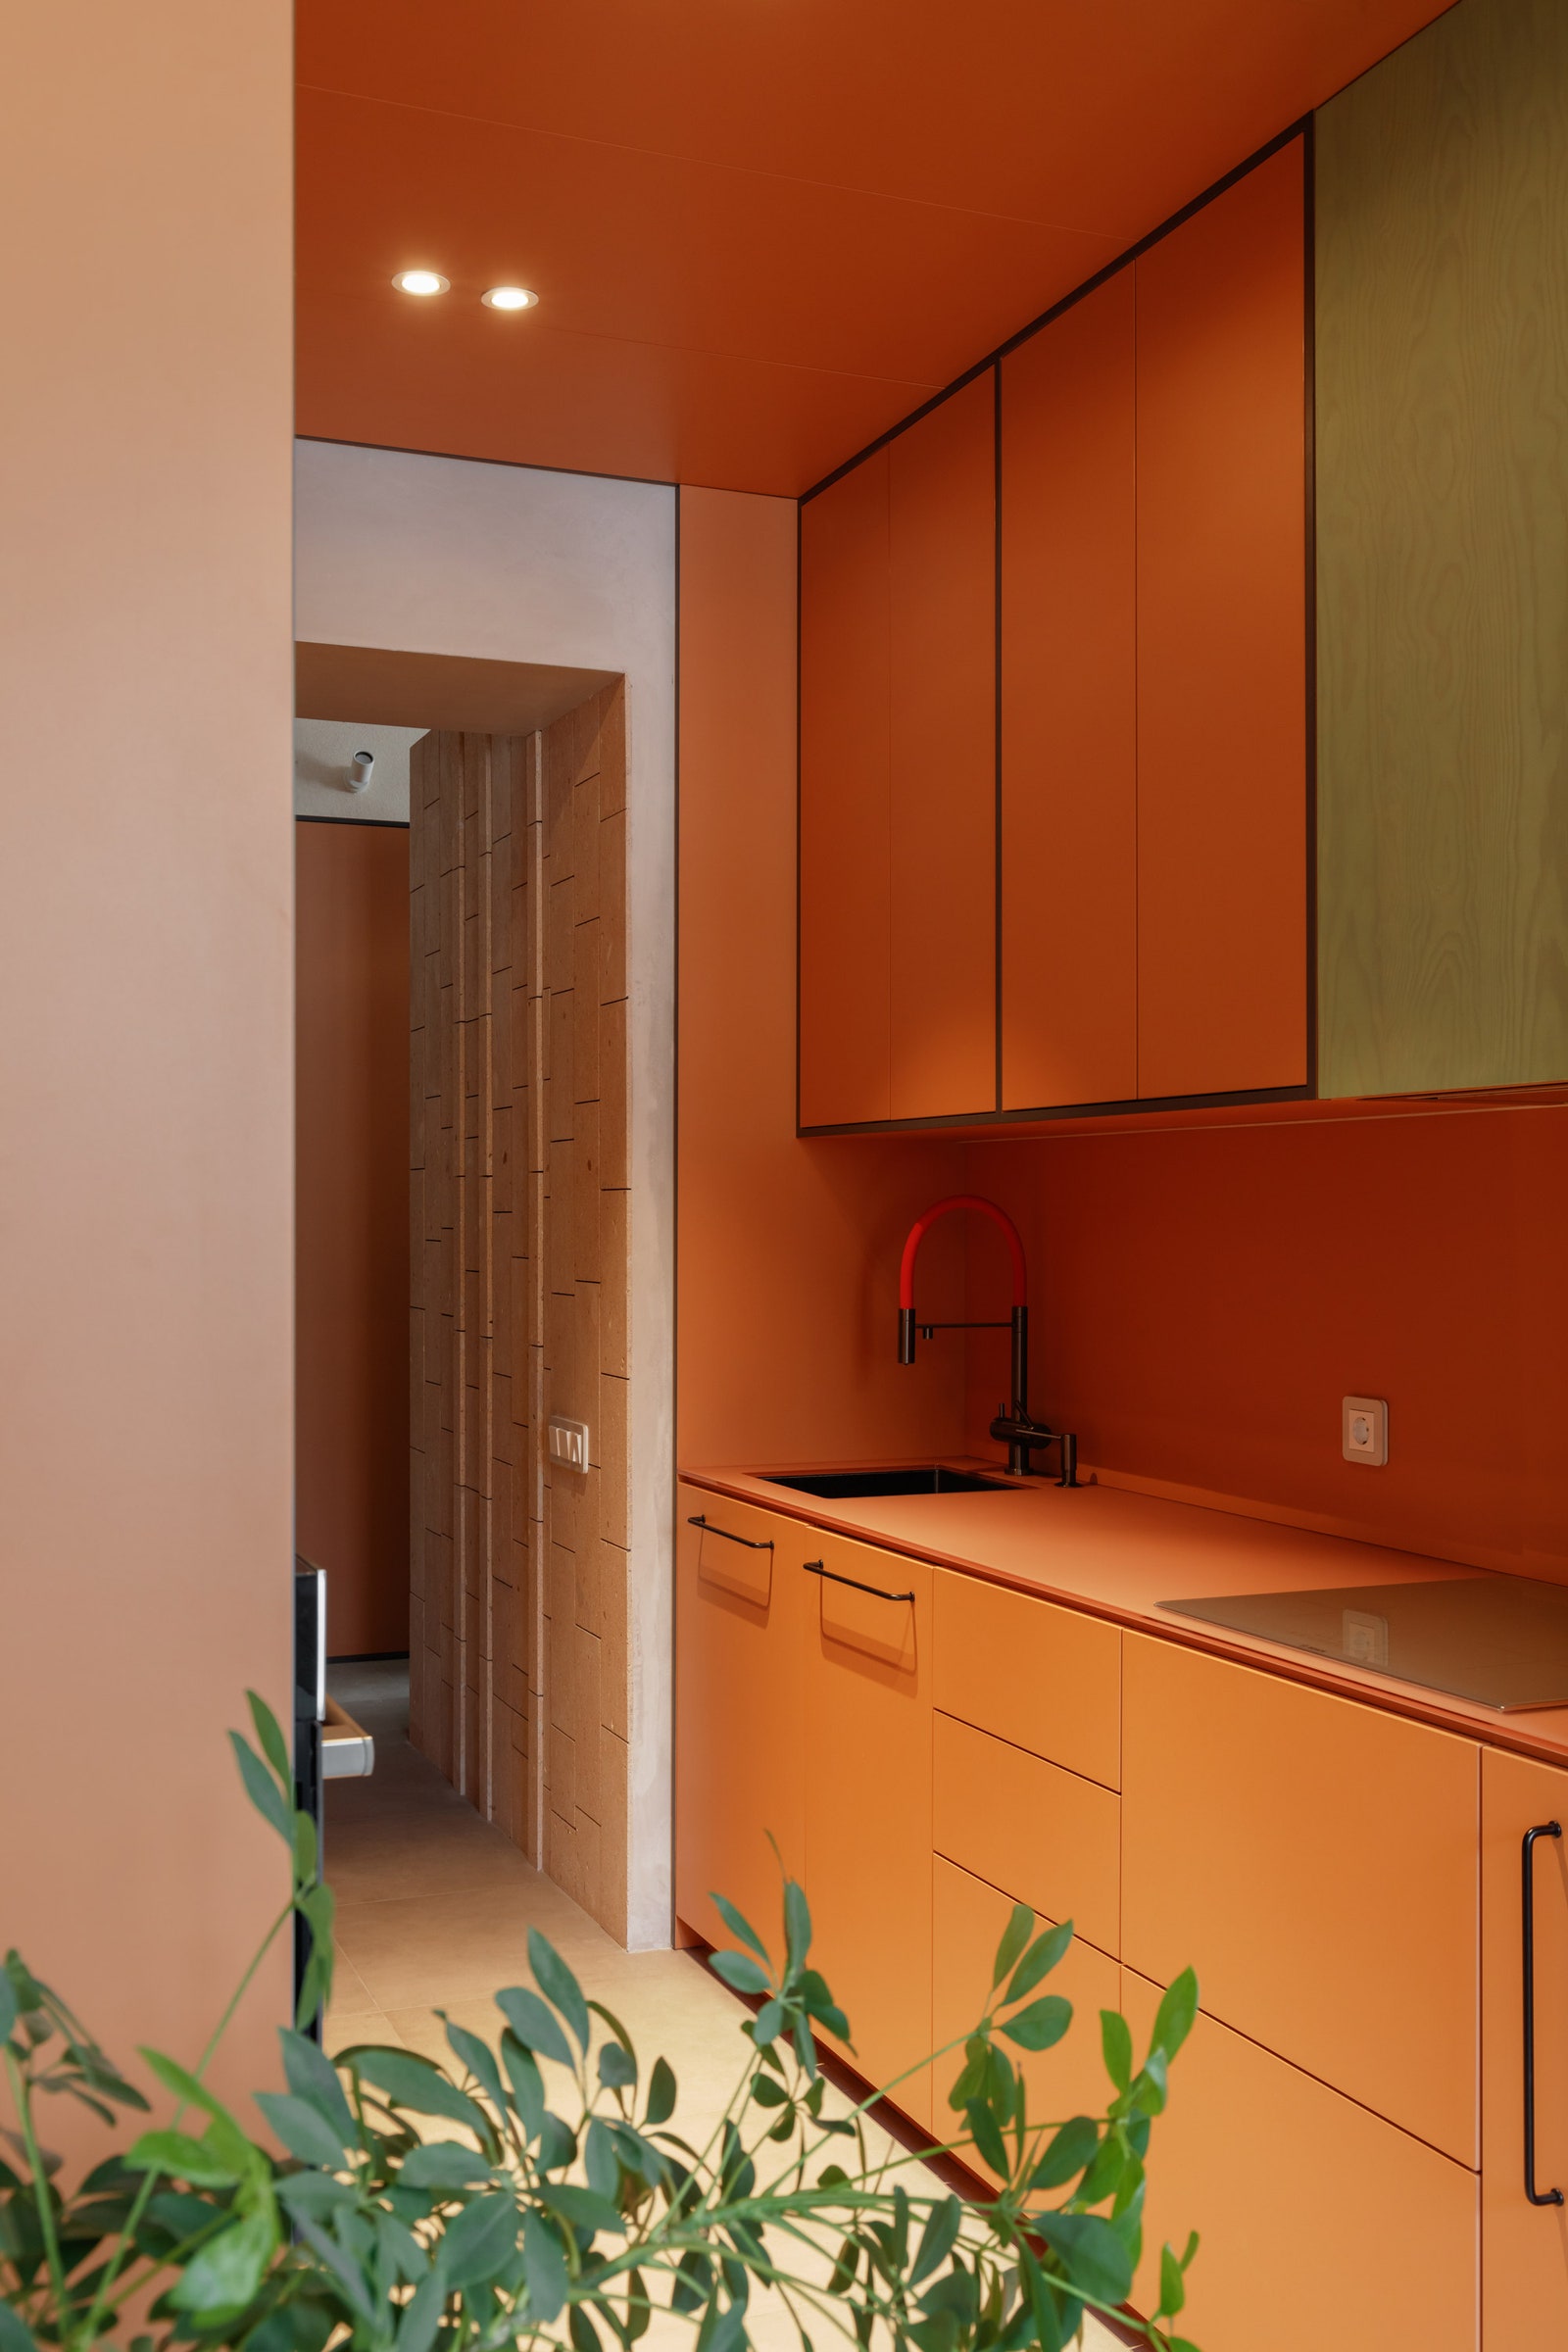 Проходная кухнякамбуз с антресолью является частью мебельного объема. Выполнена из ЛДСП карамельного цвета с контрастной...